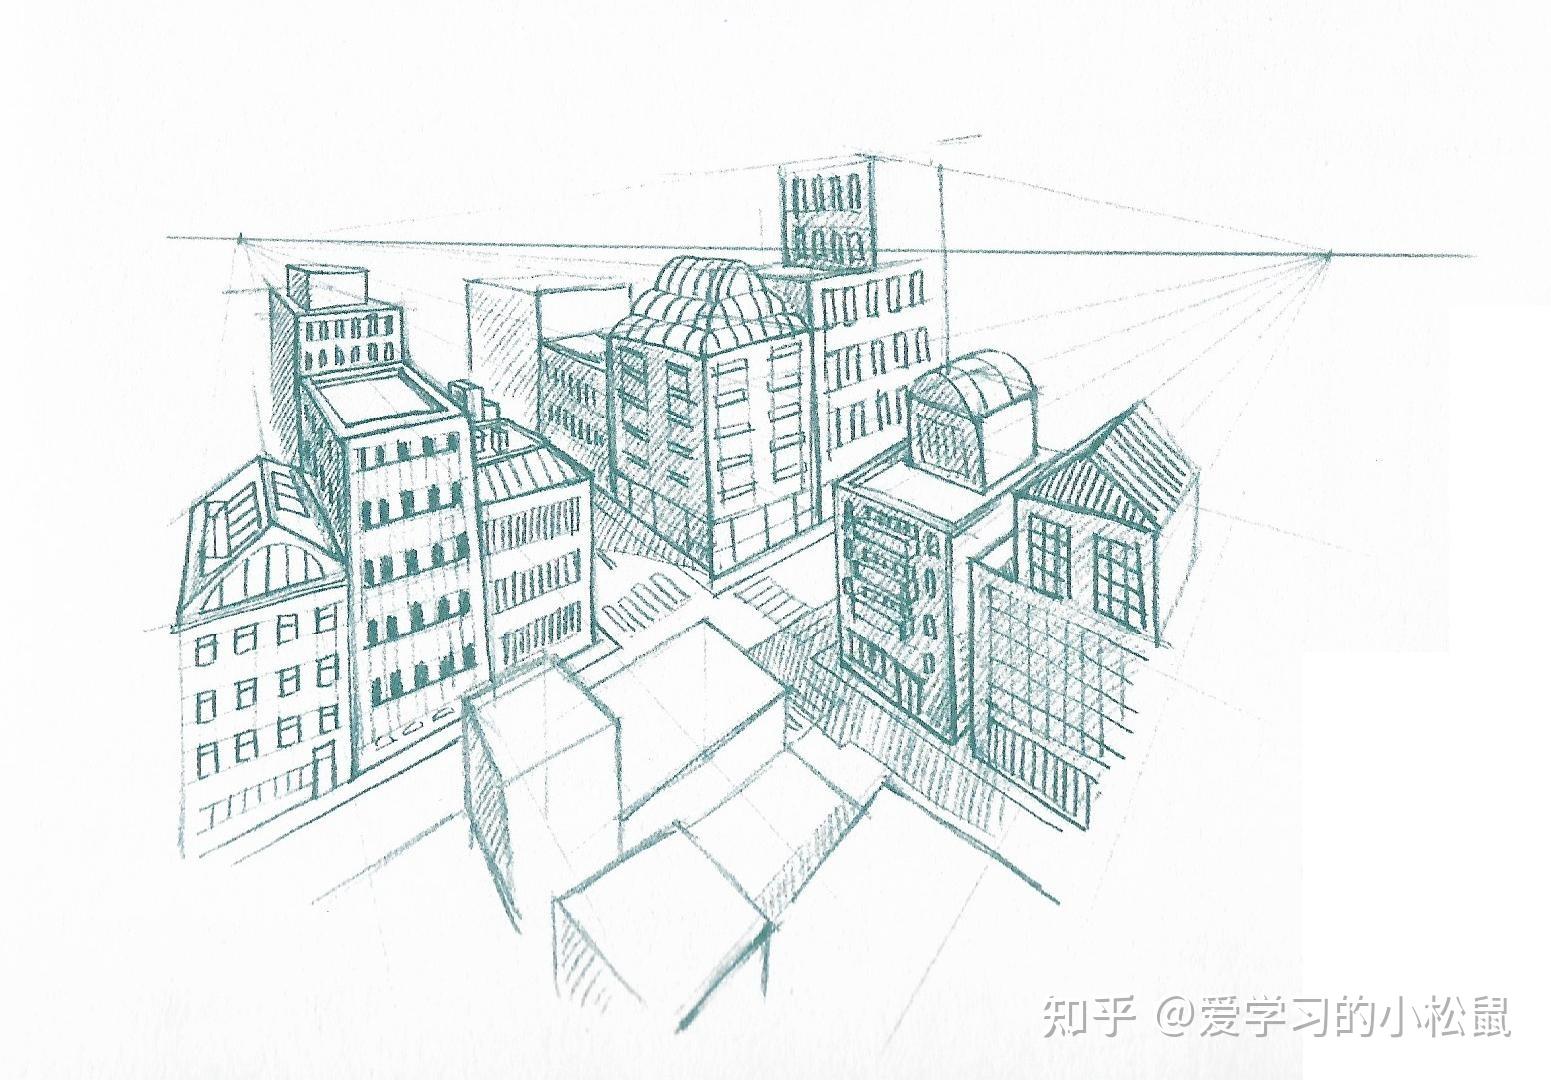 要画一幅从空中俯瞰的城市景象,先要建立透视网格,从上方的消失点往下